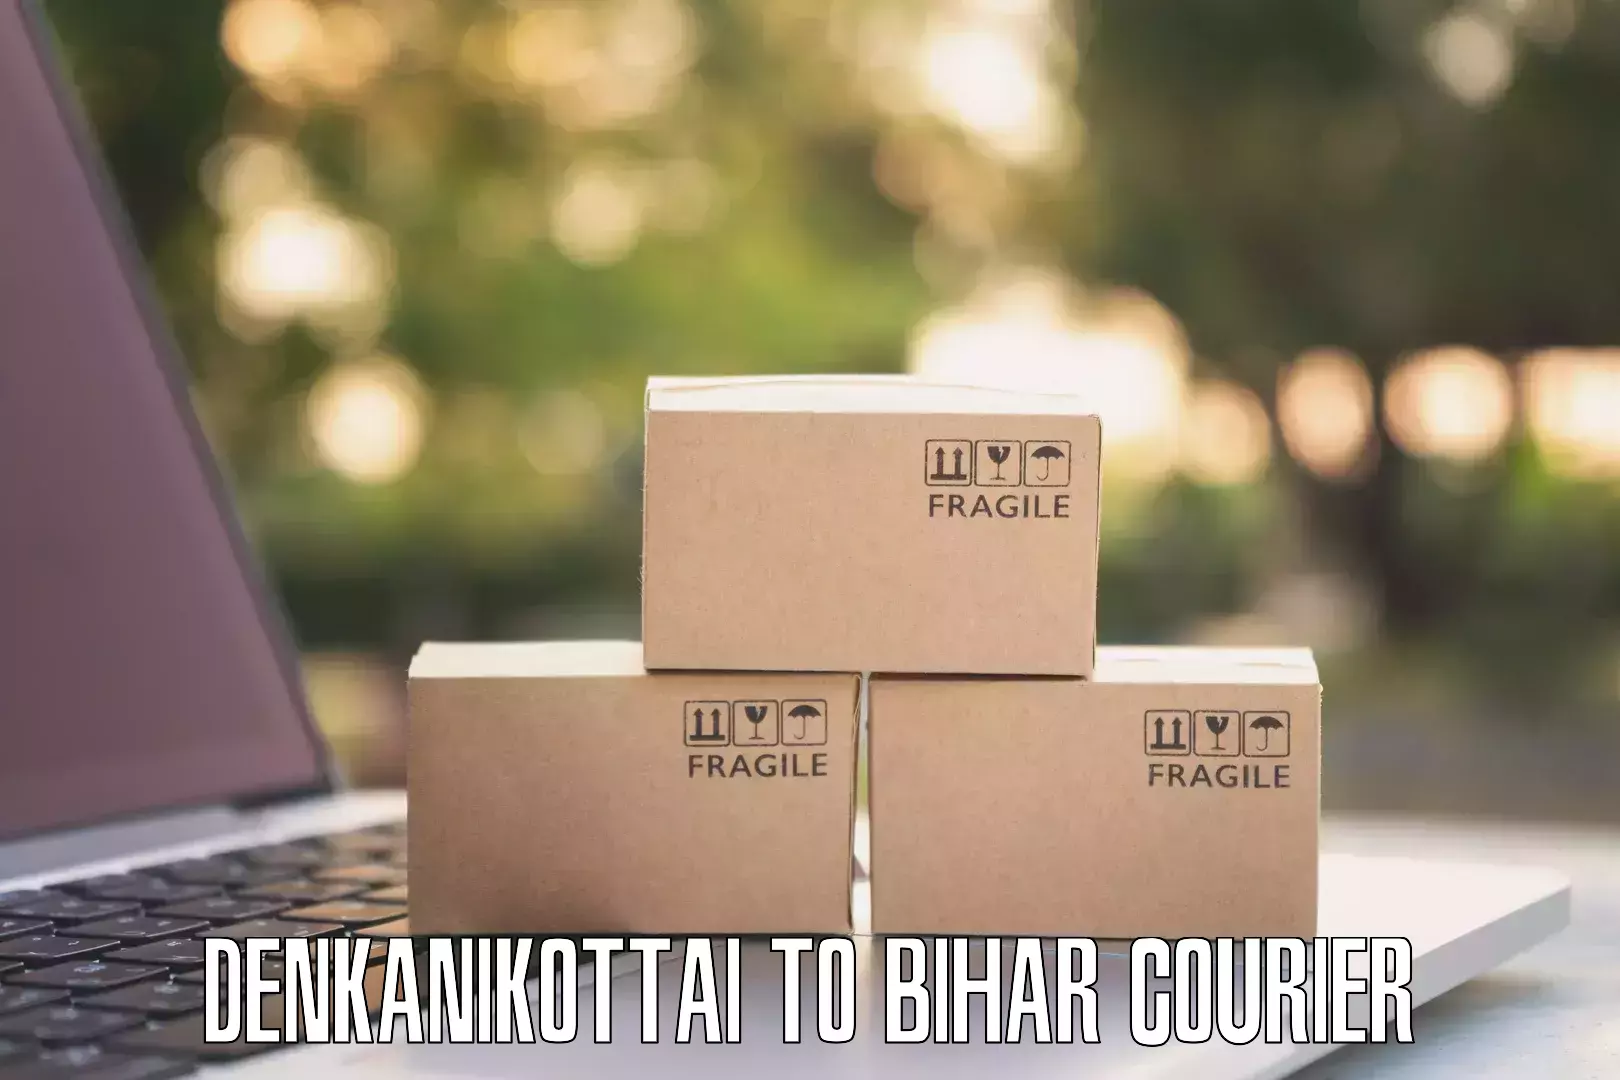 Full-service courier options Denkanikottai to Buxar